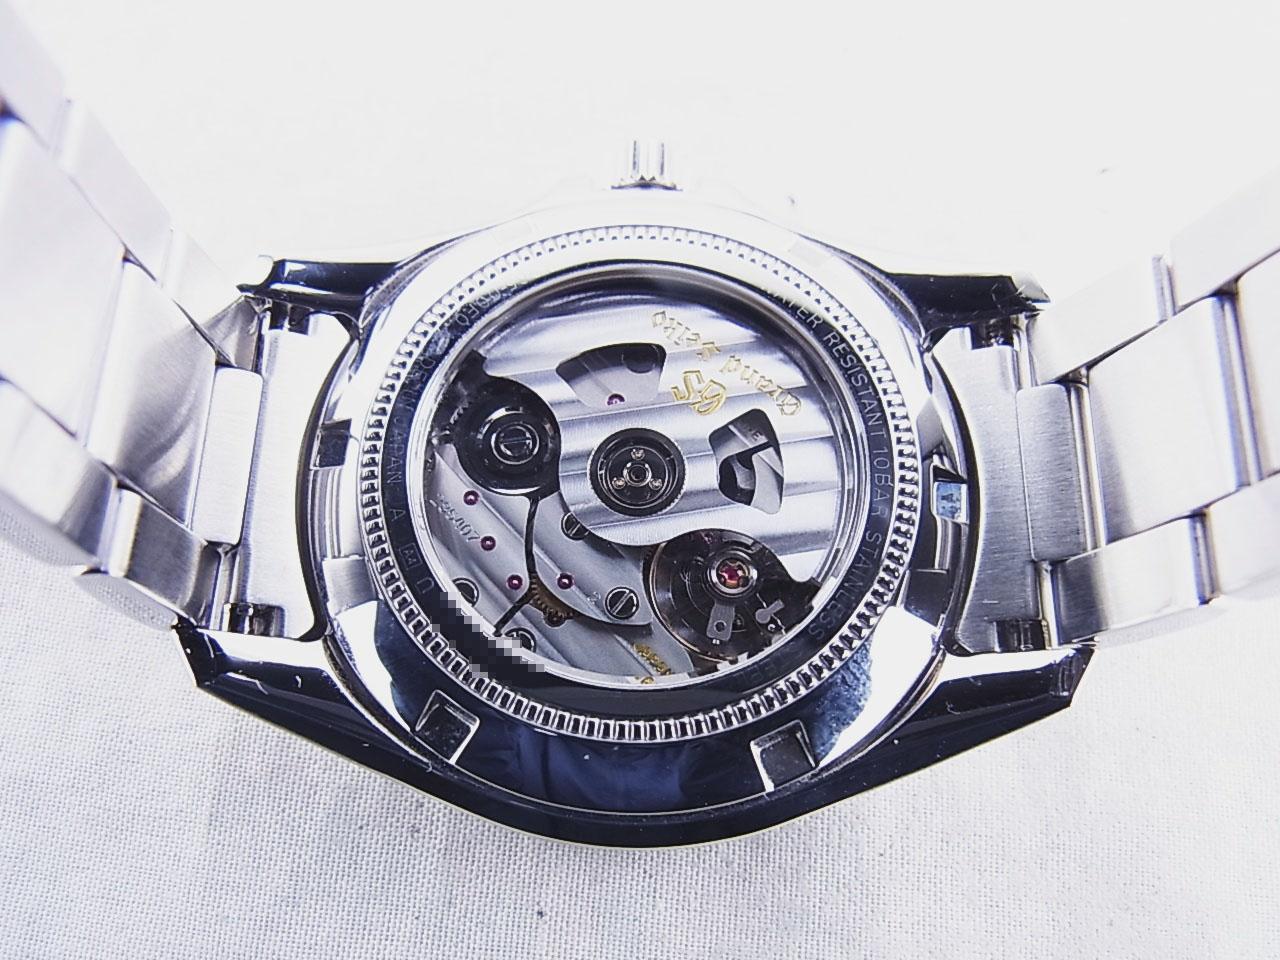 グランドセイコー Grand Seiko SBGR269 グレー メンズ 腕時計